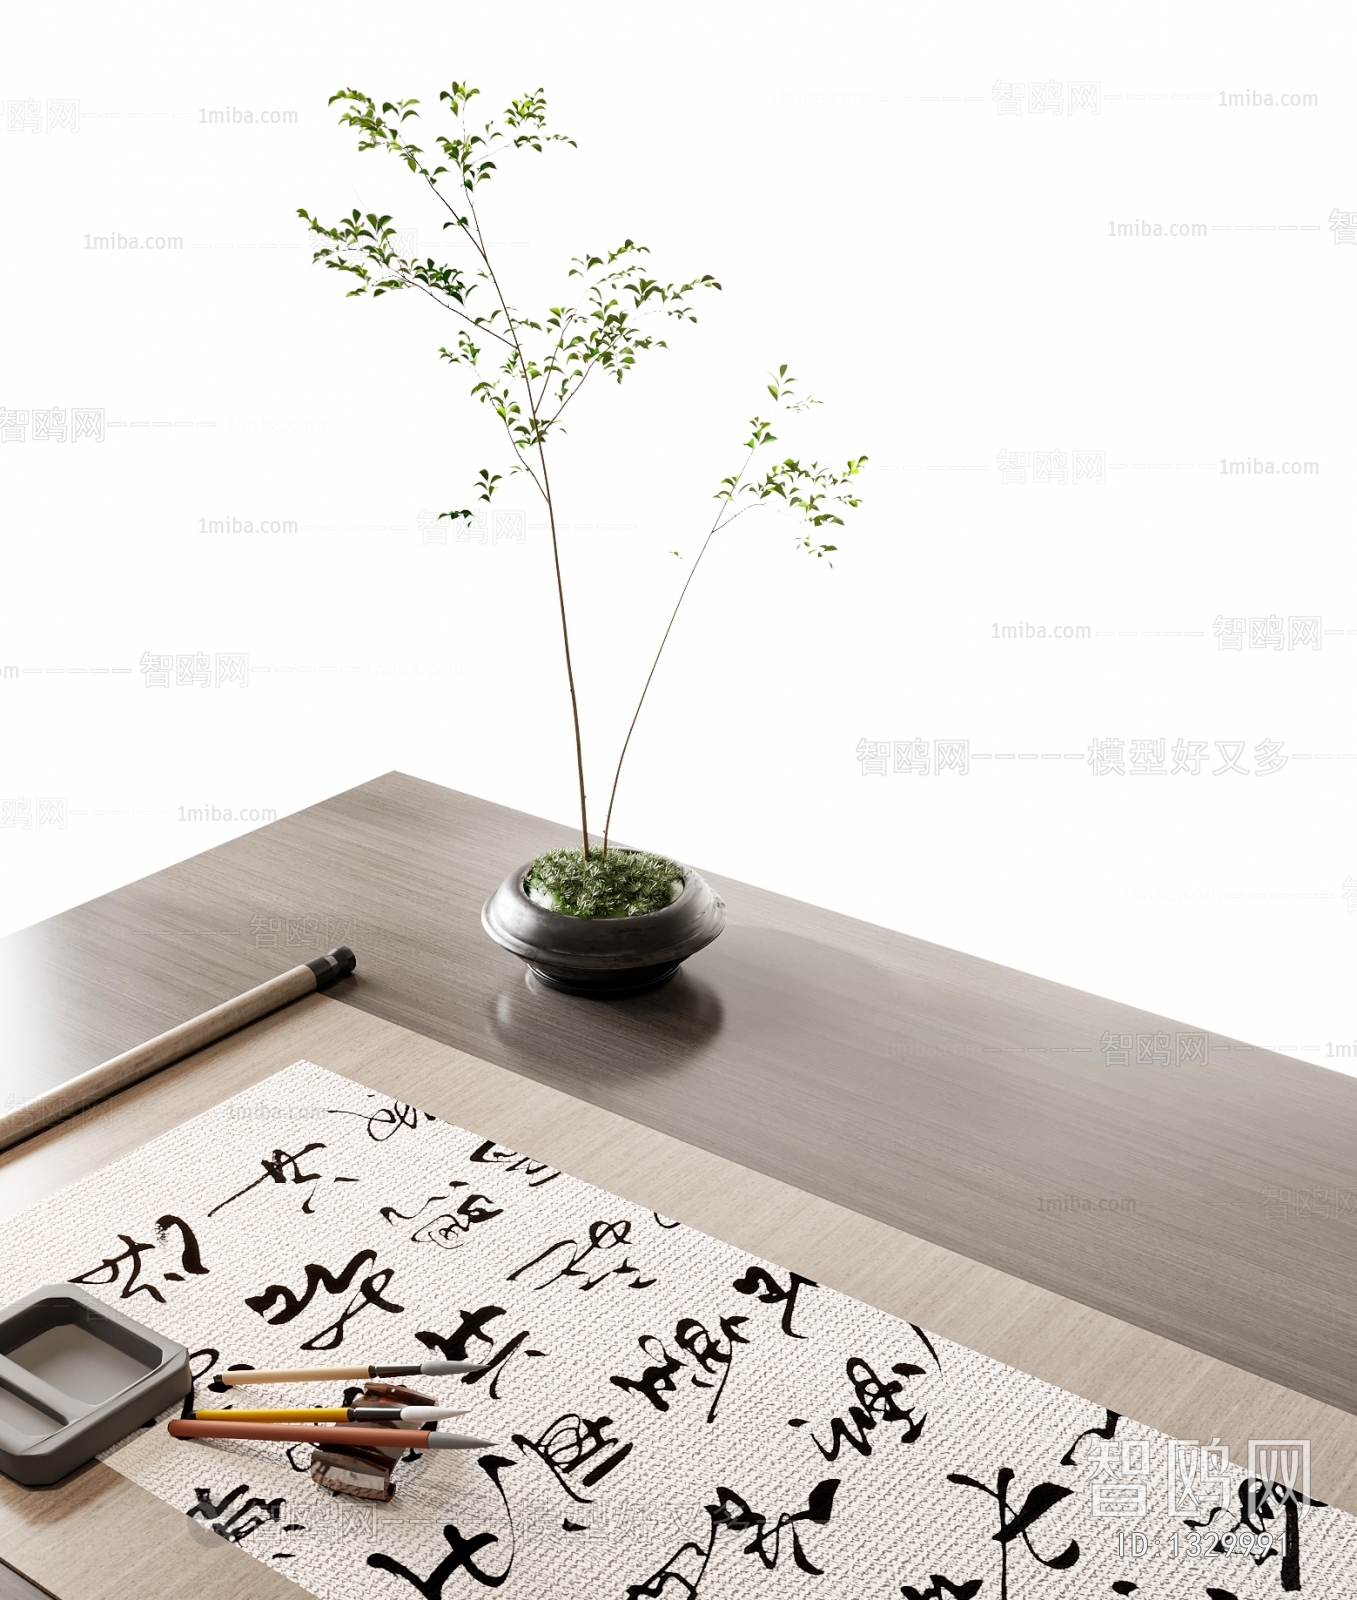 新中式书桌椅